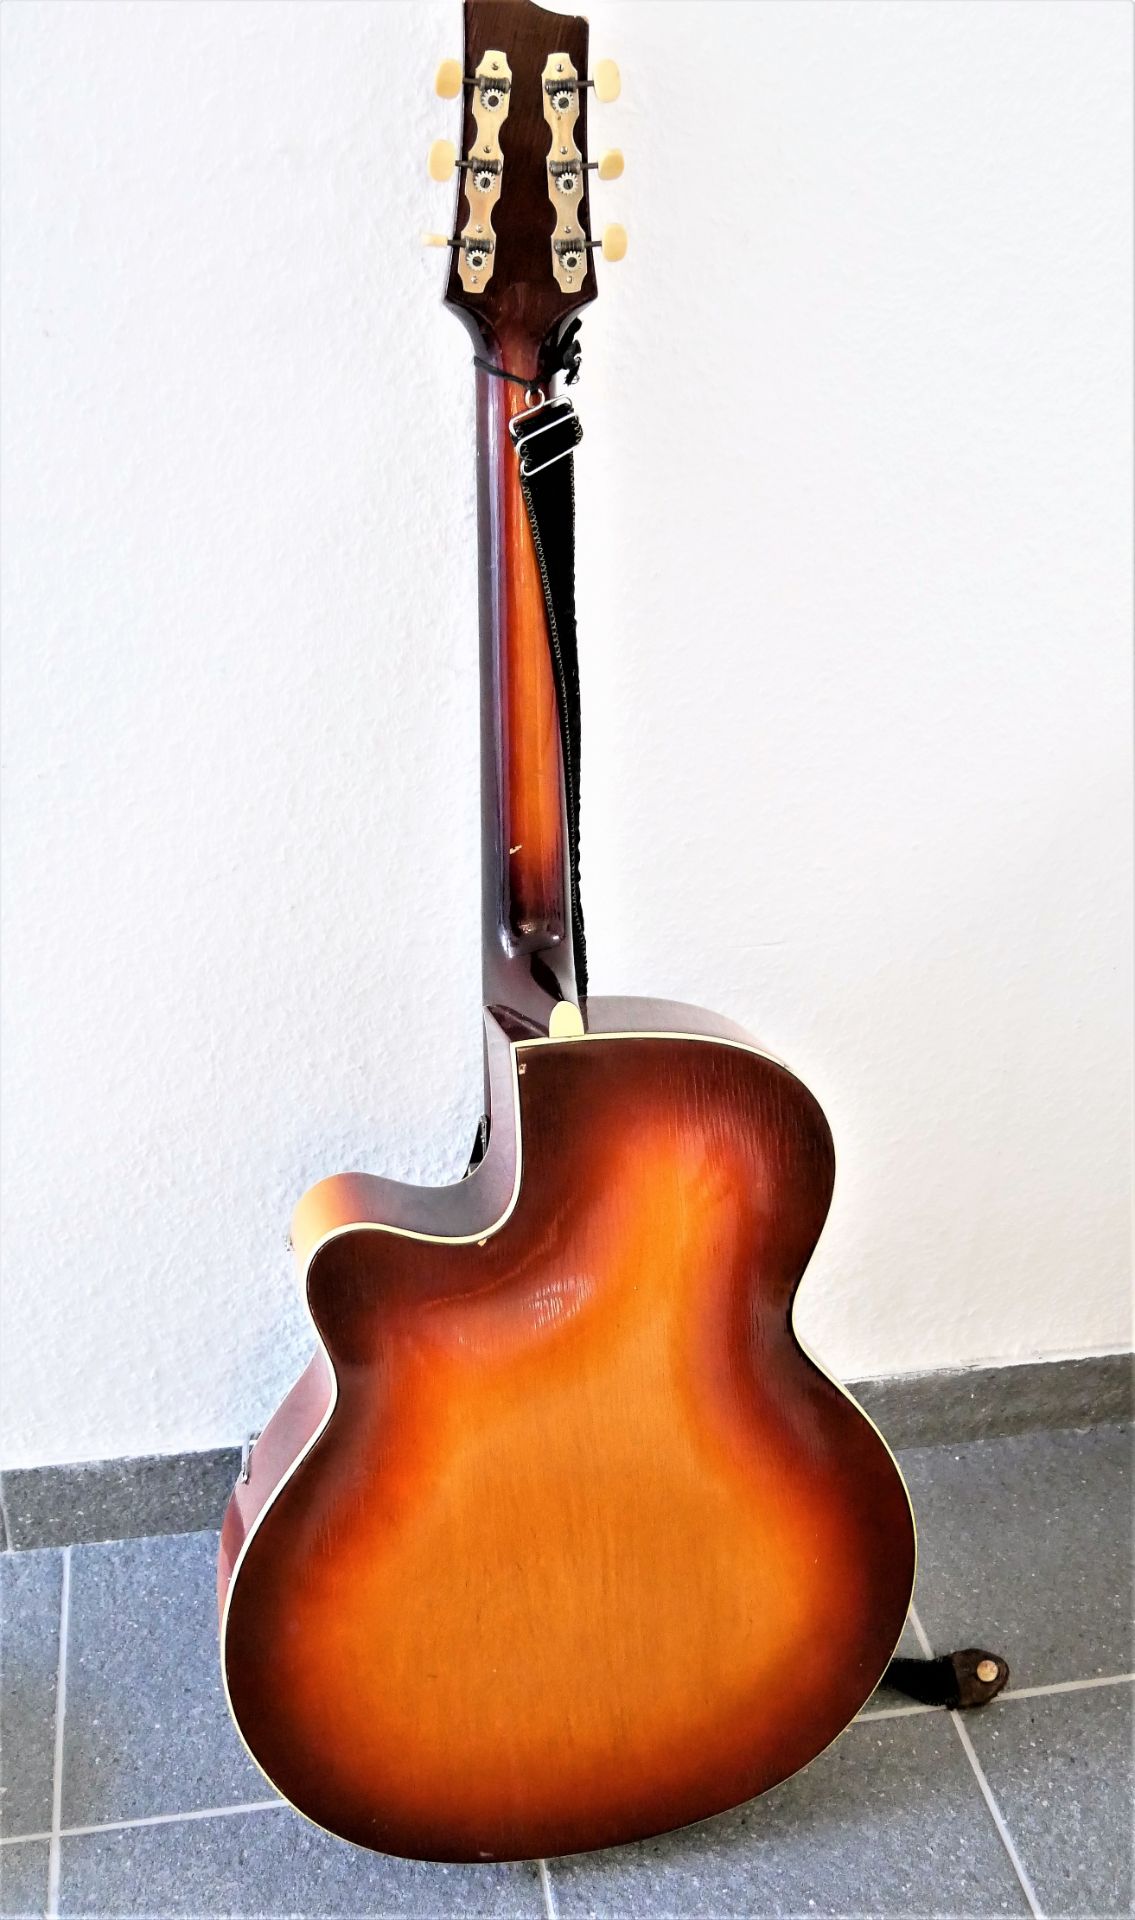 Framus E-Gitarre, wie Masterbuilt, 6-seitig. 3 Regler auf Chrom. Gebrauchter, aber guter Zustand. - Image 4 of 4